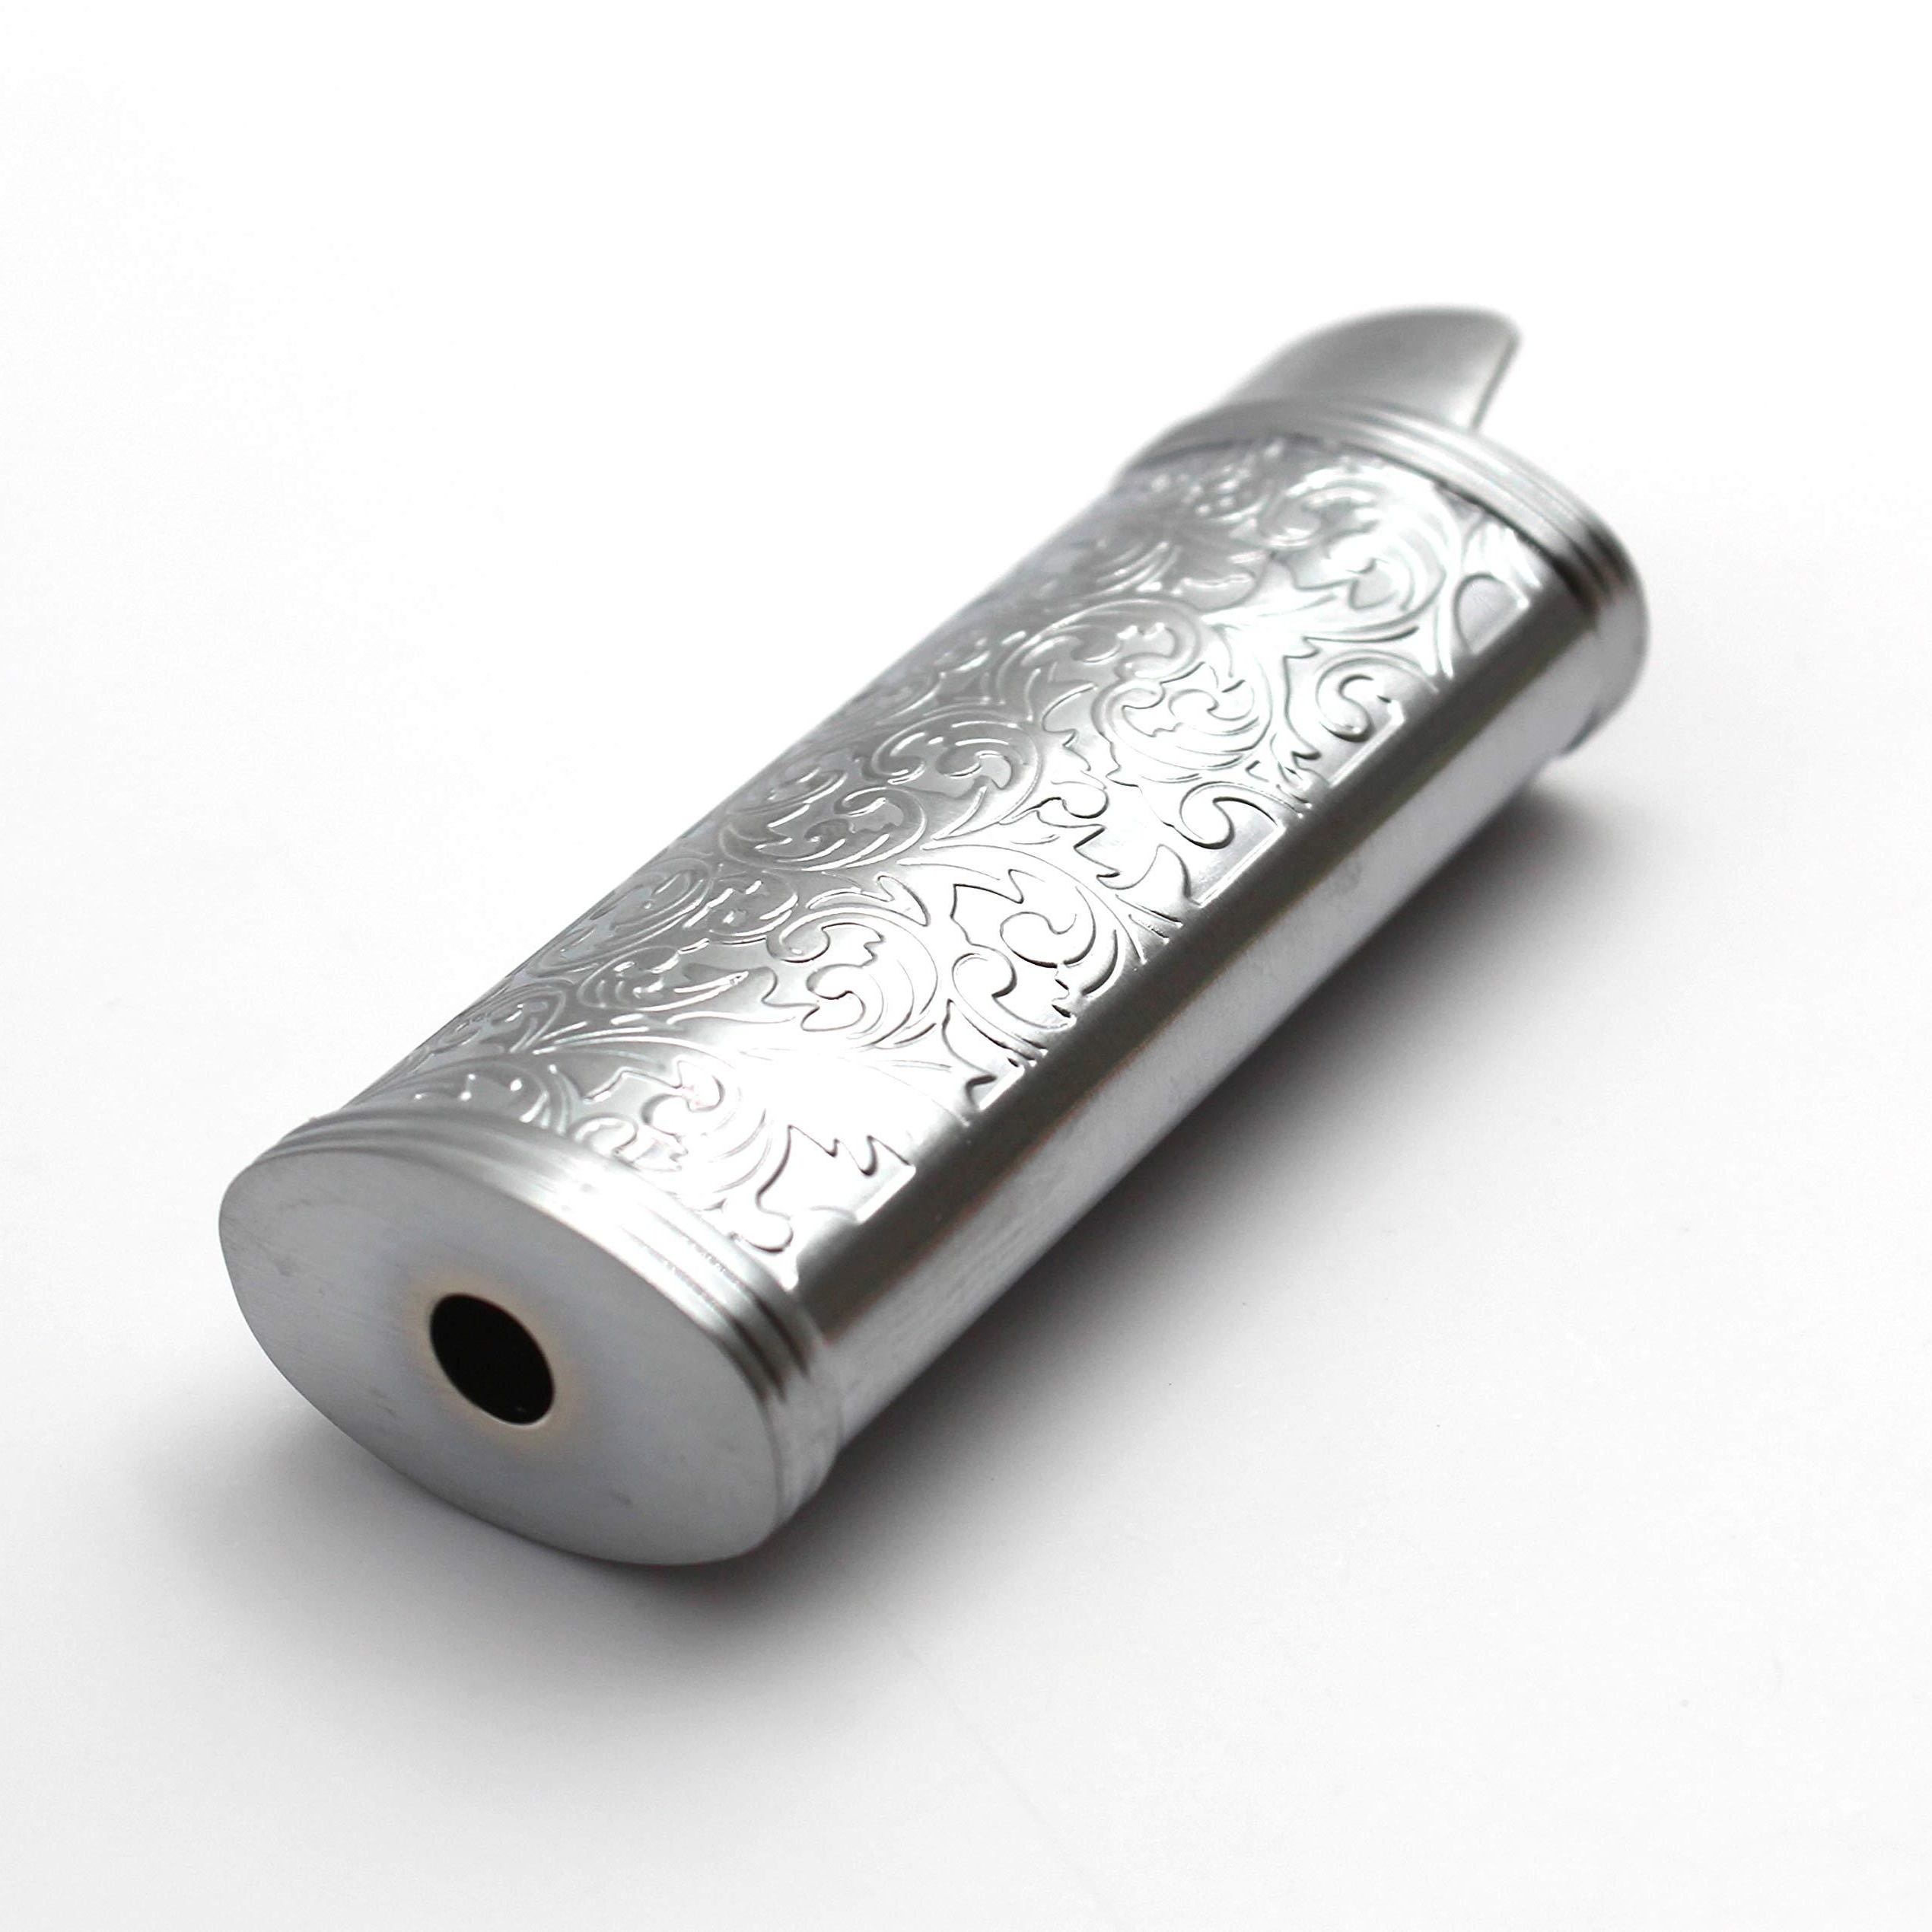 Metal Lighter Case Cover Fits Standard Bic Lighter J6 In Heart /Flower